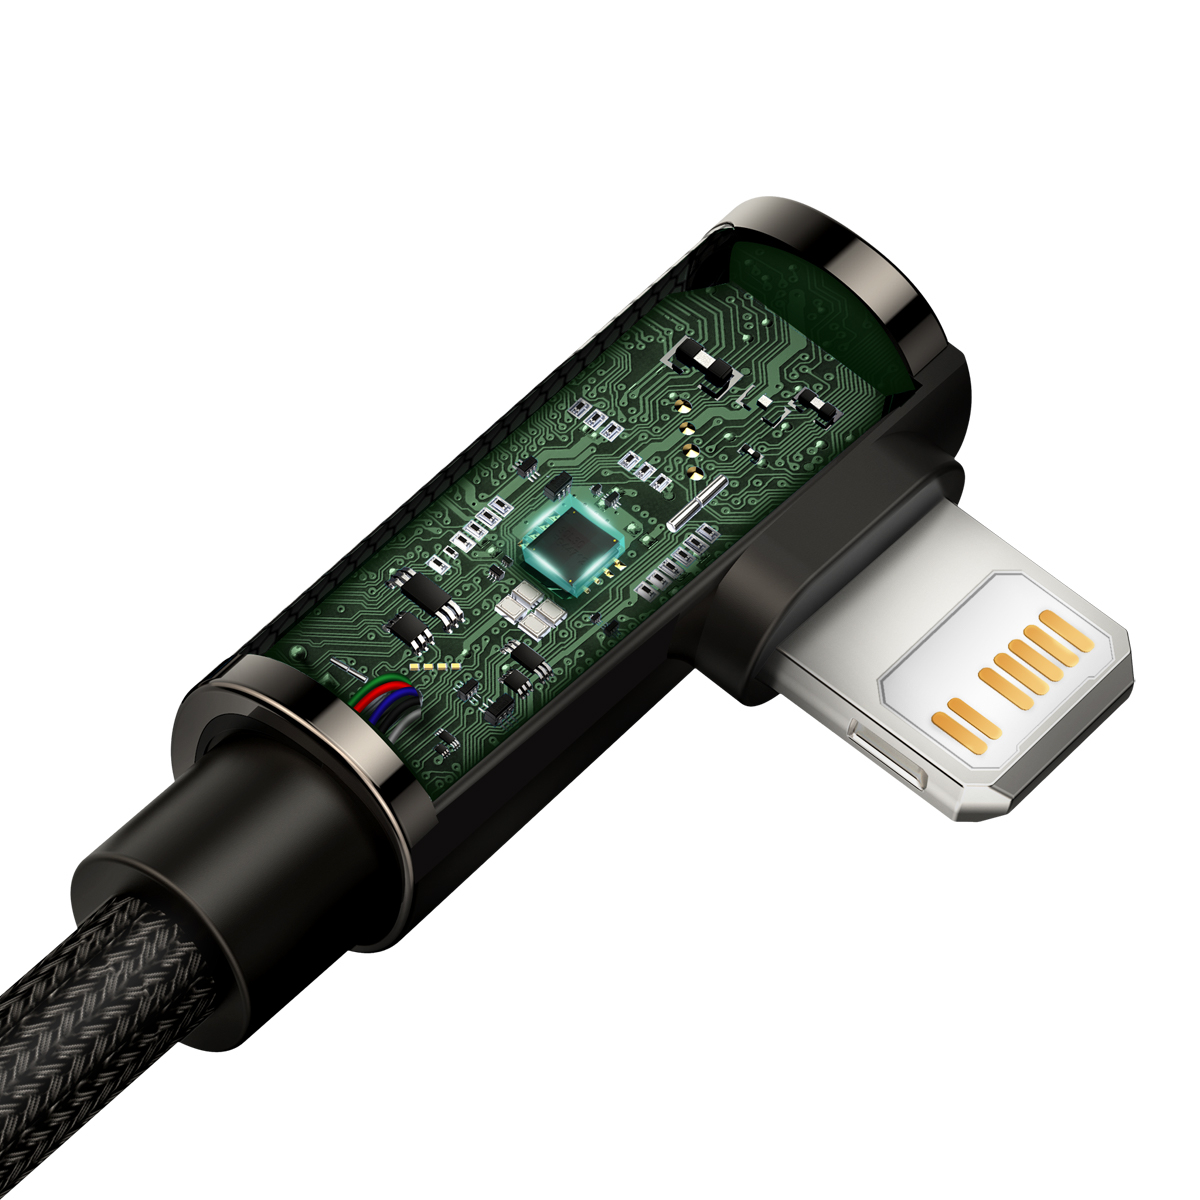 Baseus CATLCS-01 Legend Vinklad USB-C-Lightning-kabel, 20W, 1m